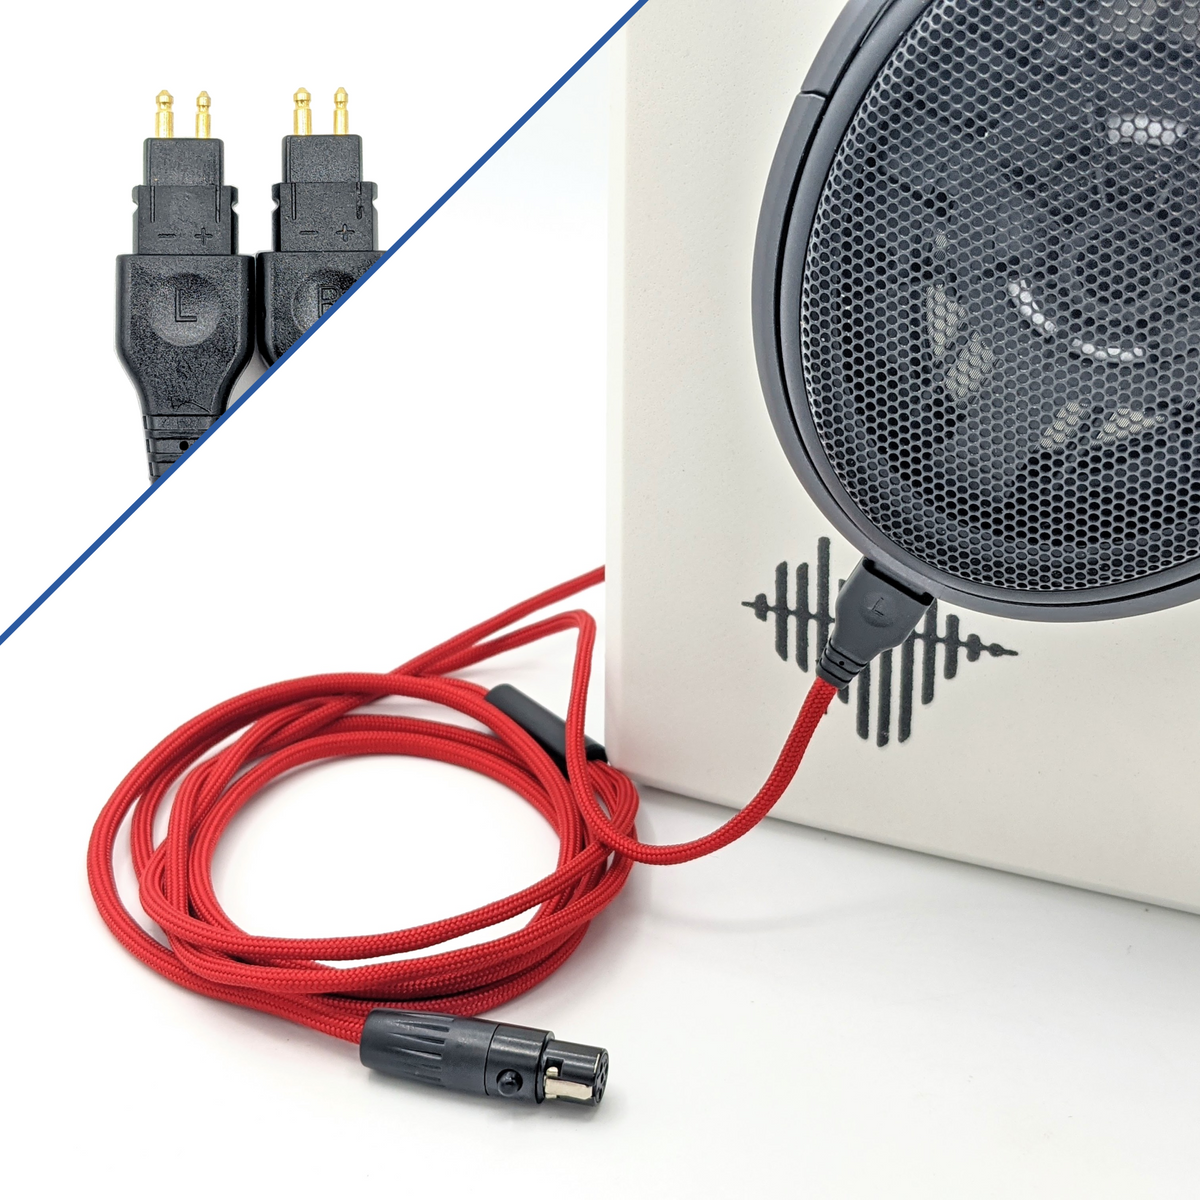 Sennheiser Consumer Audio 504195 Auriculares - Con cable (renovado)